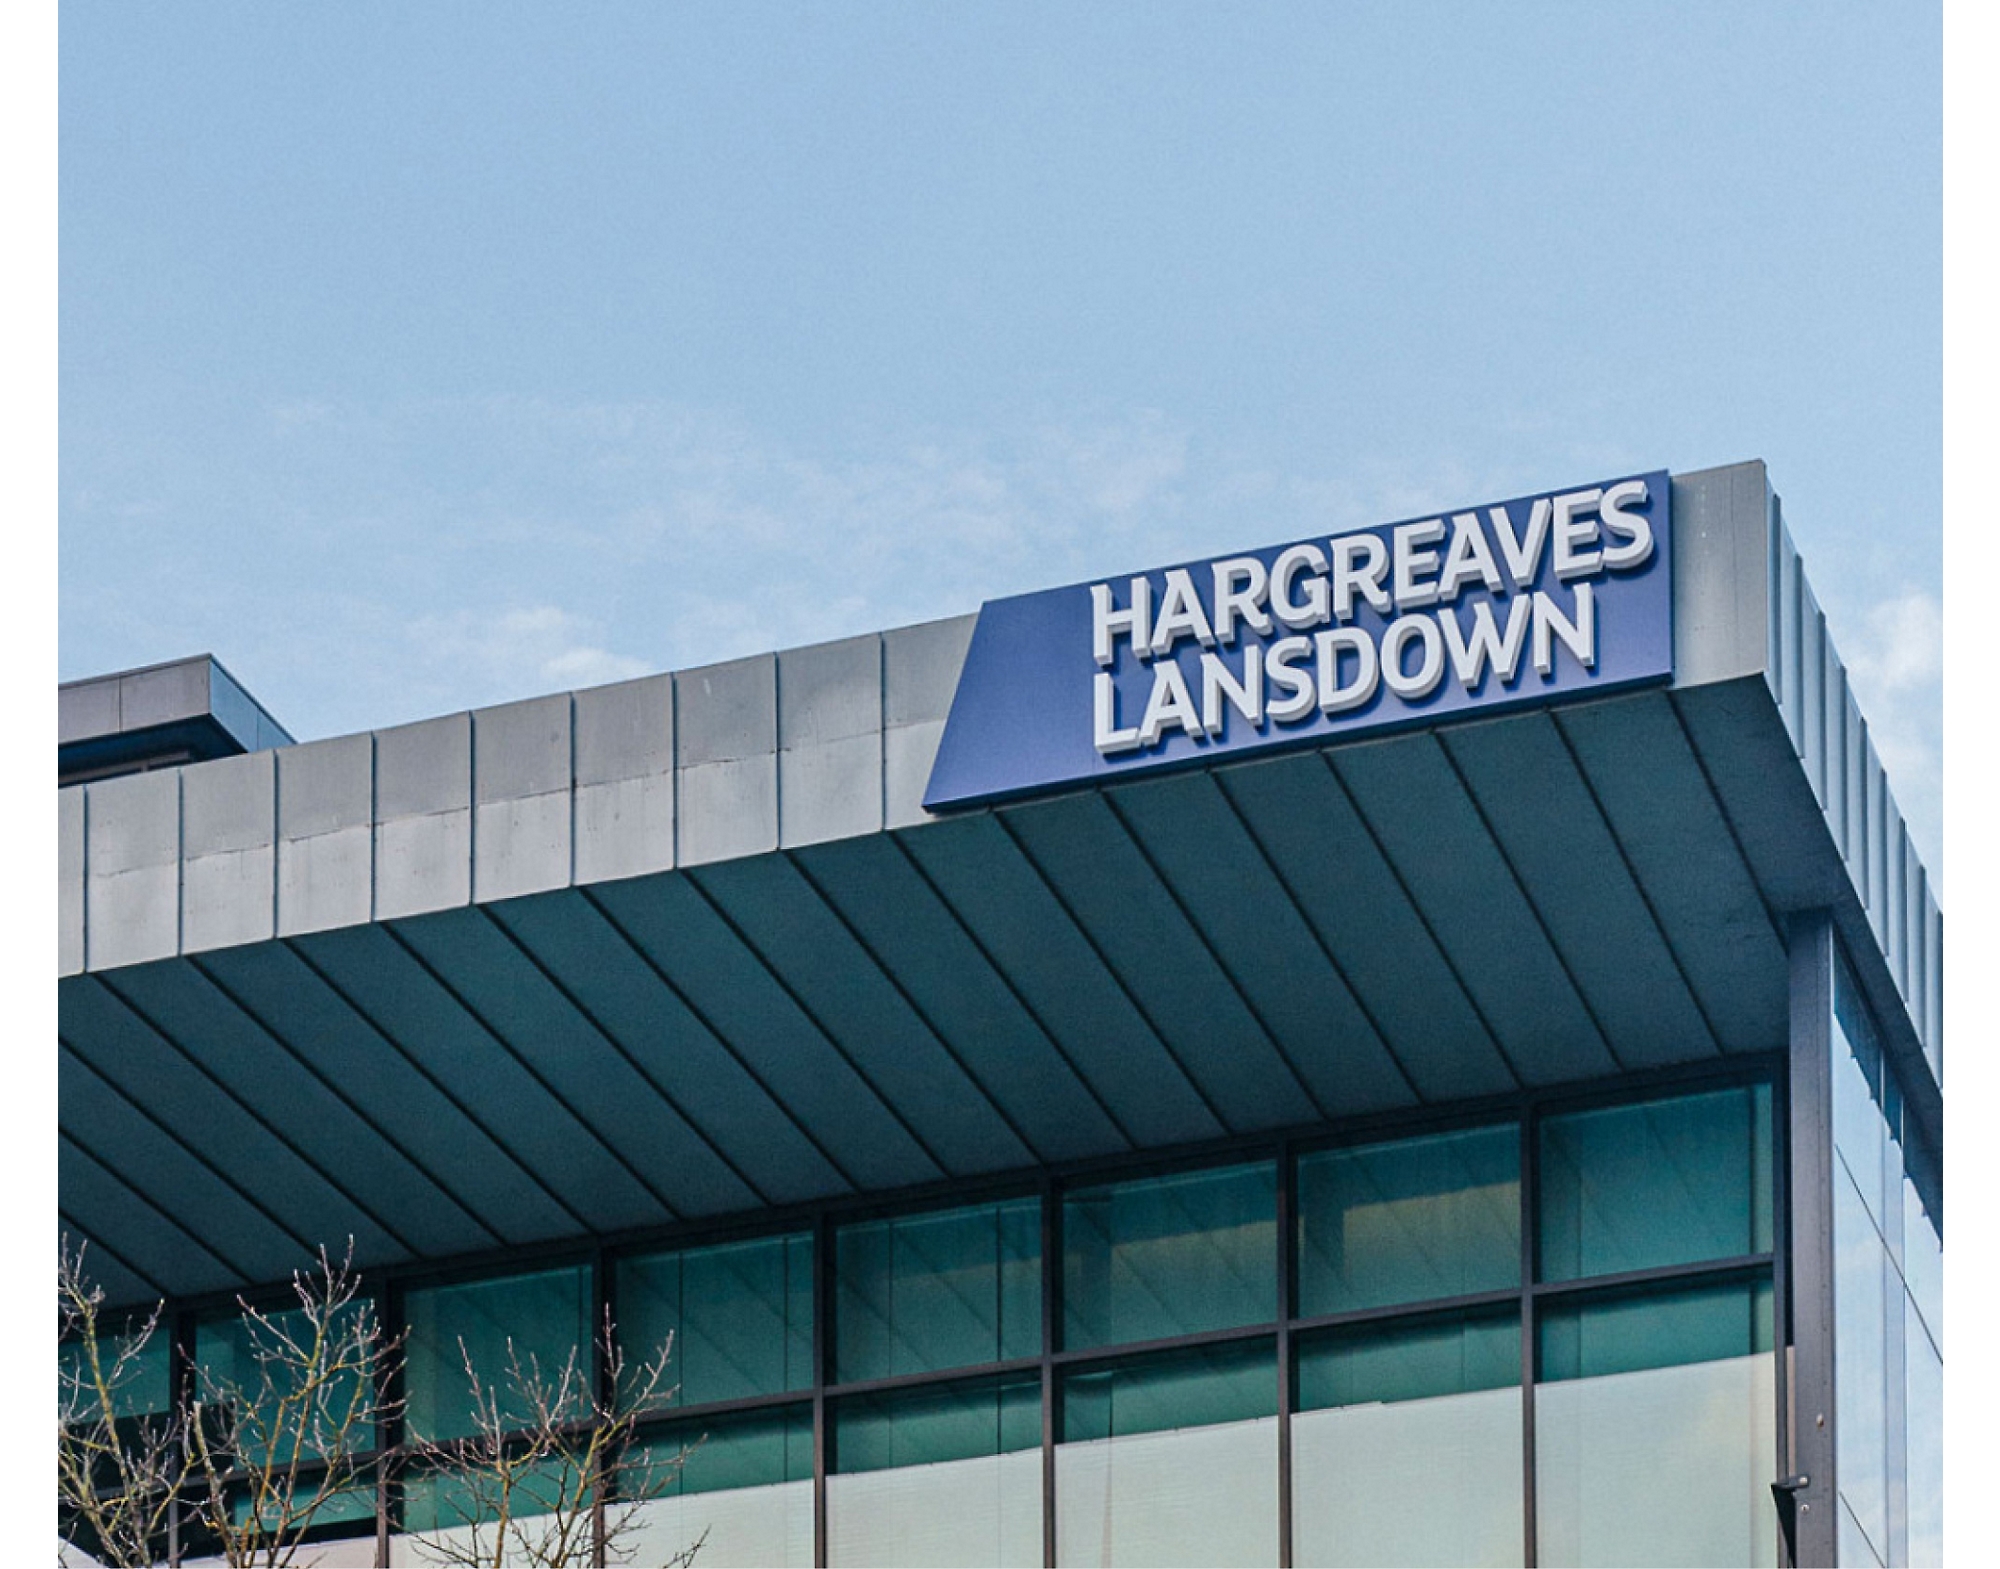 Señal de "hargreaves lansdown" en la parte superior de un edificio moderno con el cielo despejado de fondo.